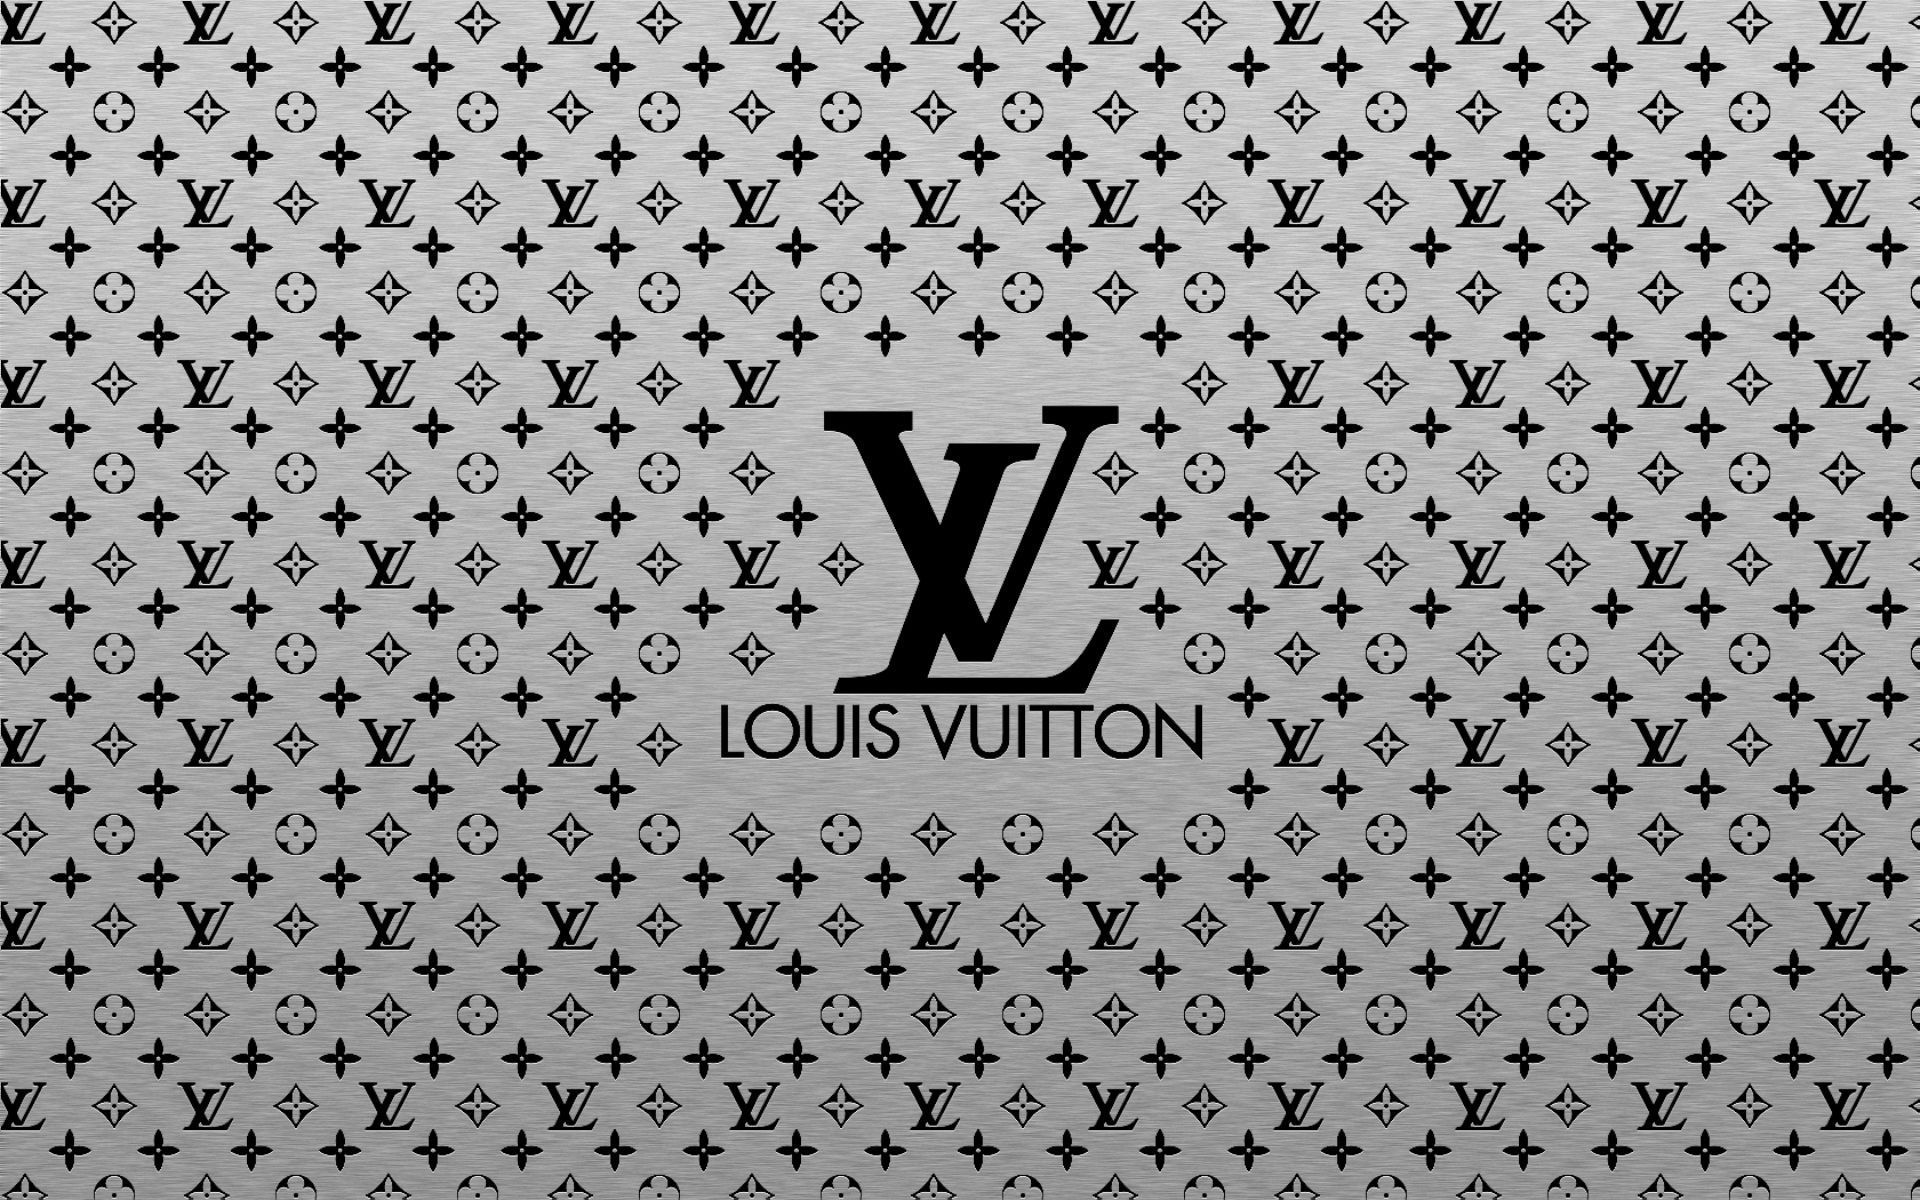 LV Wallpapers mang đến cho bạn sự tươi mới và độc đáo với nhiều mẫu hình nền được chọn lọc kỹ lưỡng từ thương hiệu Louis Vuitton. Bạn sẽ cảm thấy phong phú hơn với sự đa dạng của những thiết kế đặc biệt của chúng tôi.